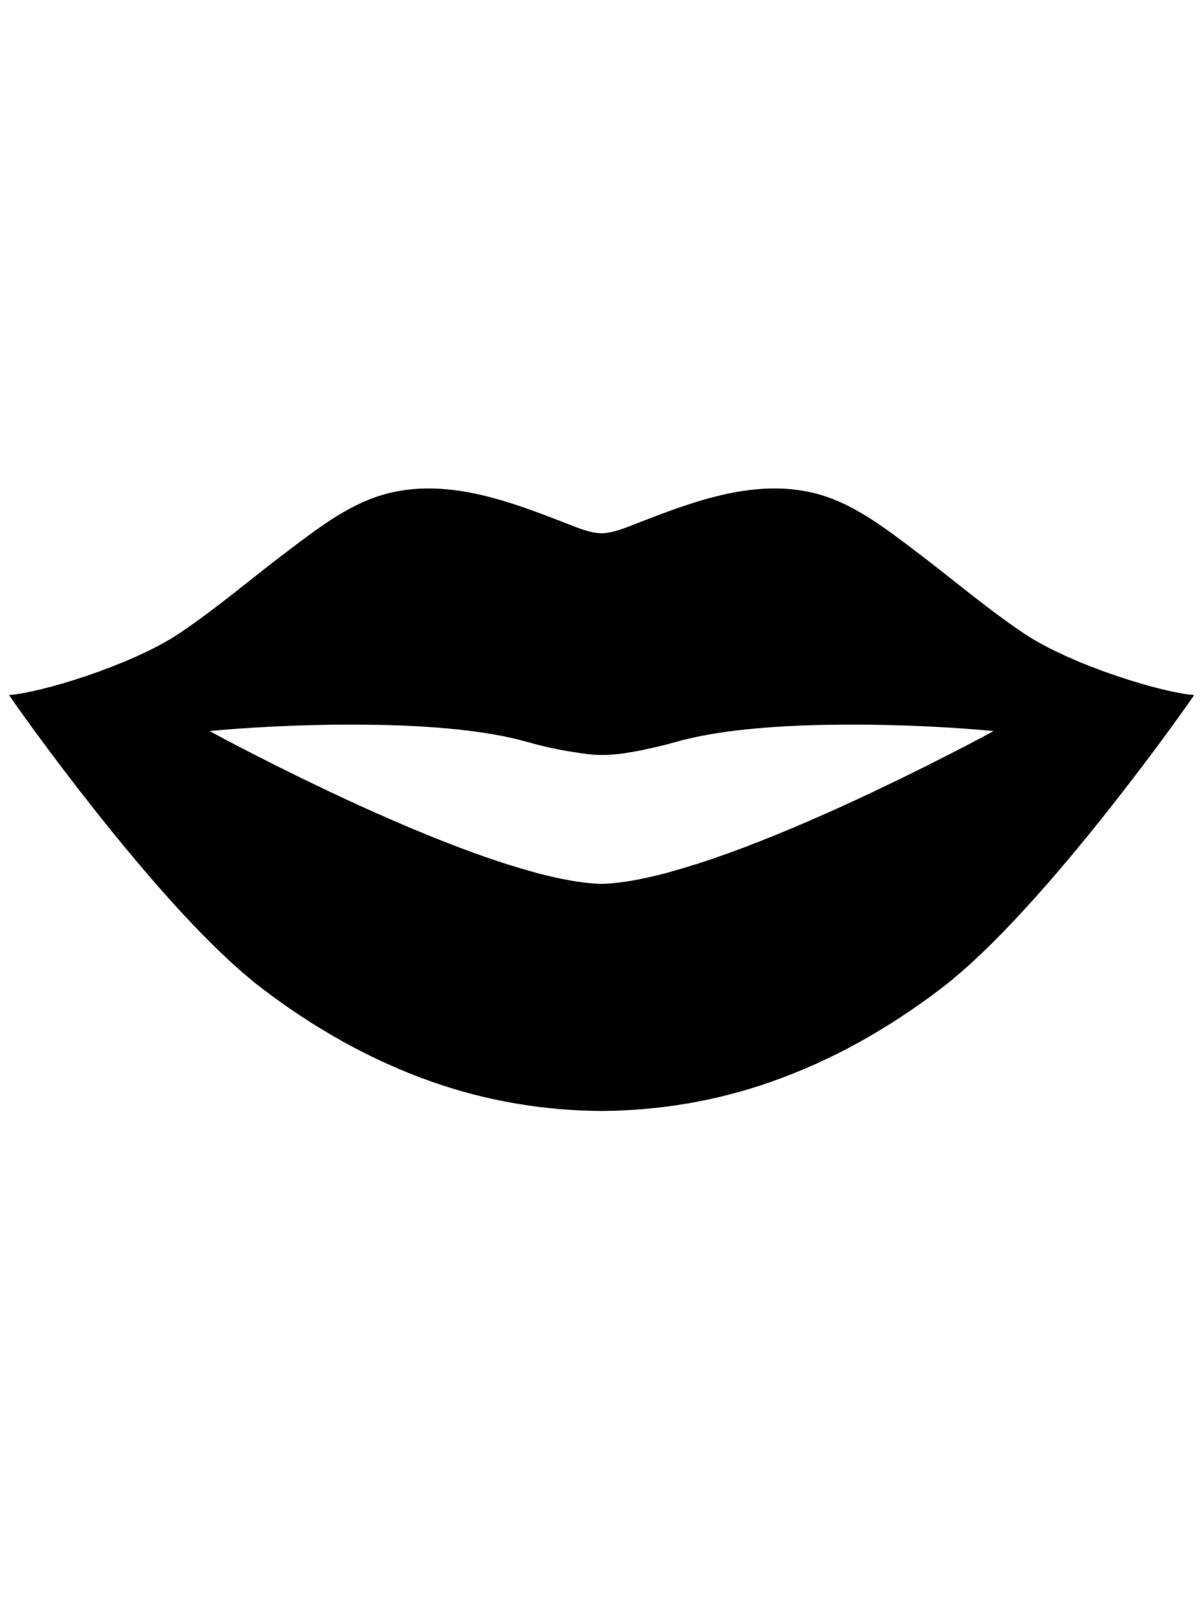 lips-template-printable